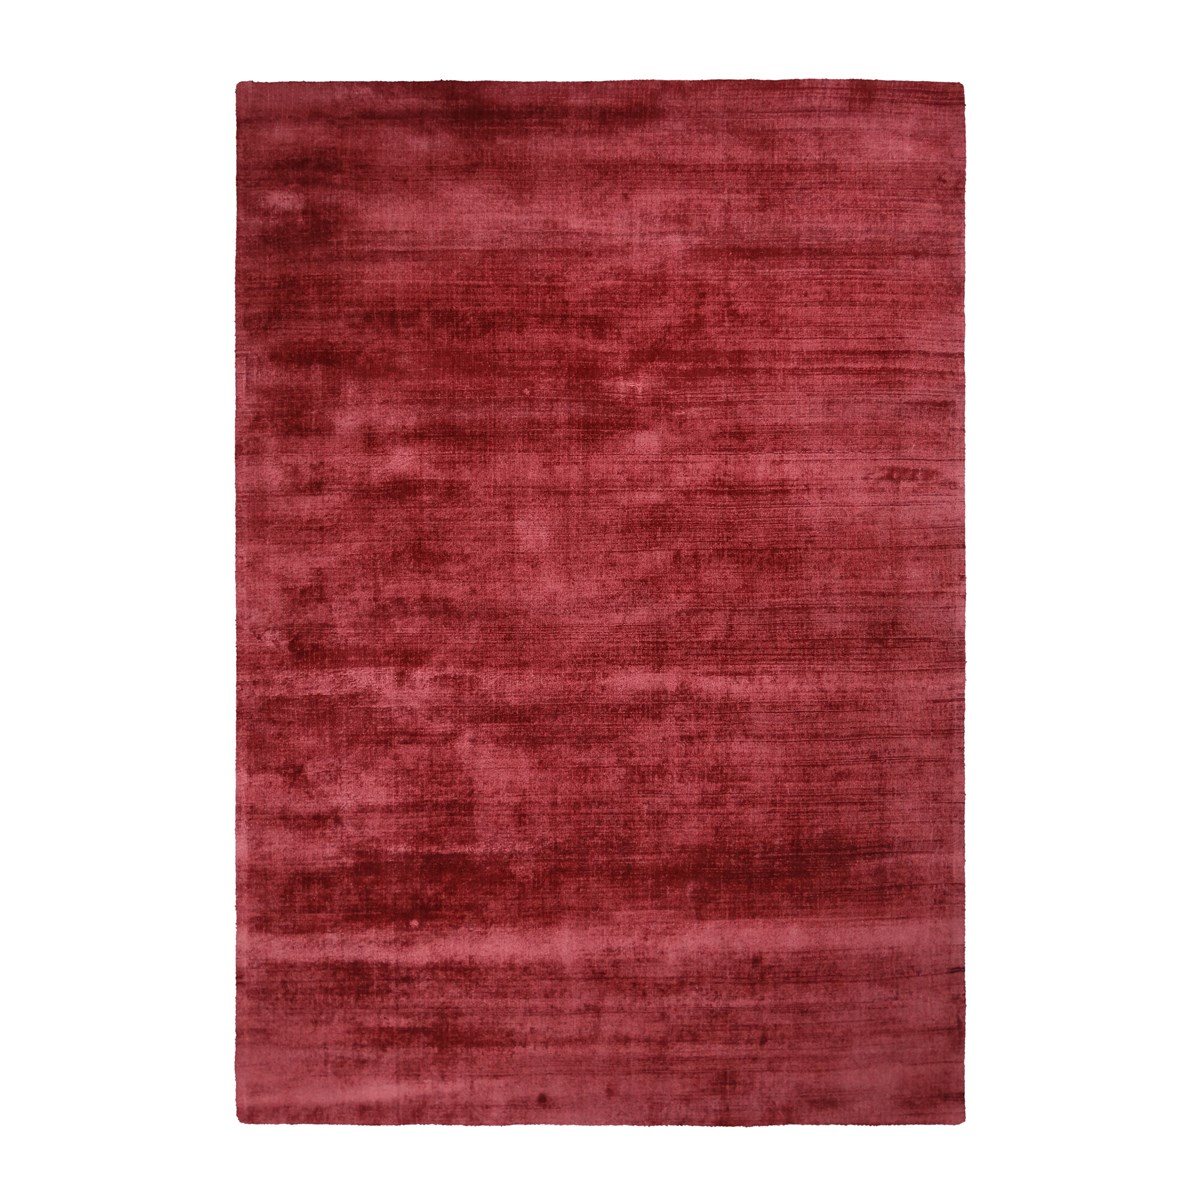 Tapis moderne en Viscose Rose rouge 120x170 cm